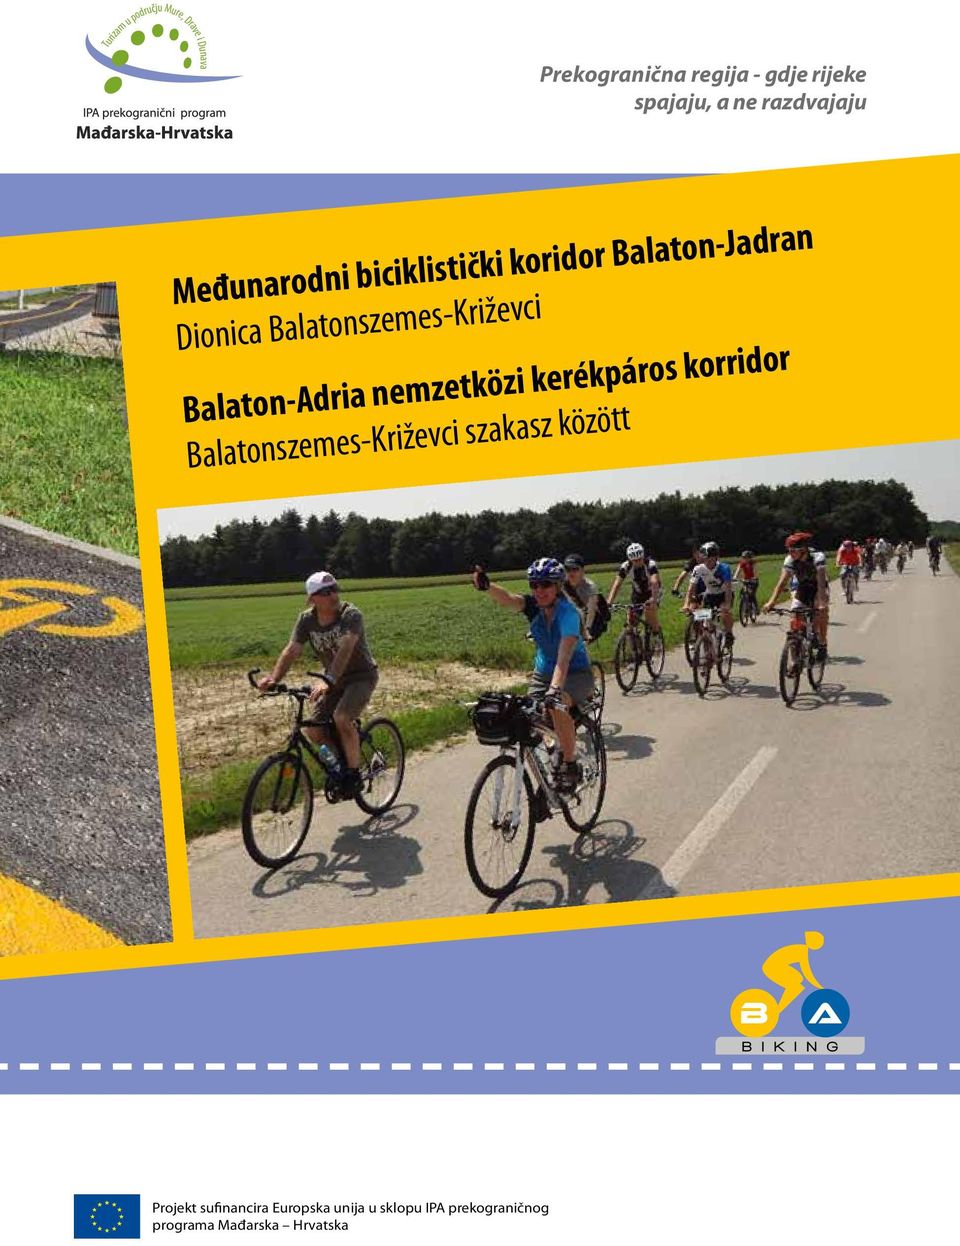 Balaton-Adria nemzetközi kerékpáros korridor Balatonszemes-Križevci szakasz között B a B I